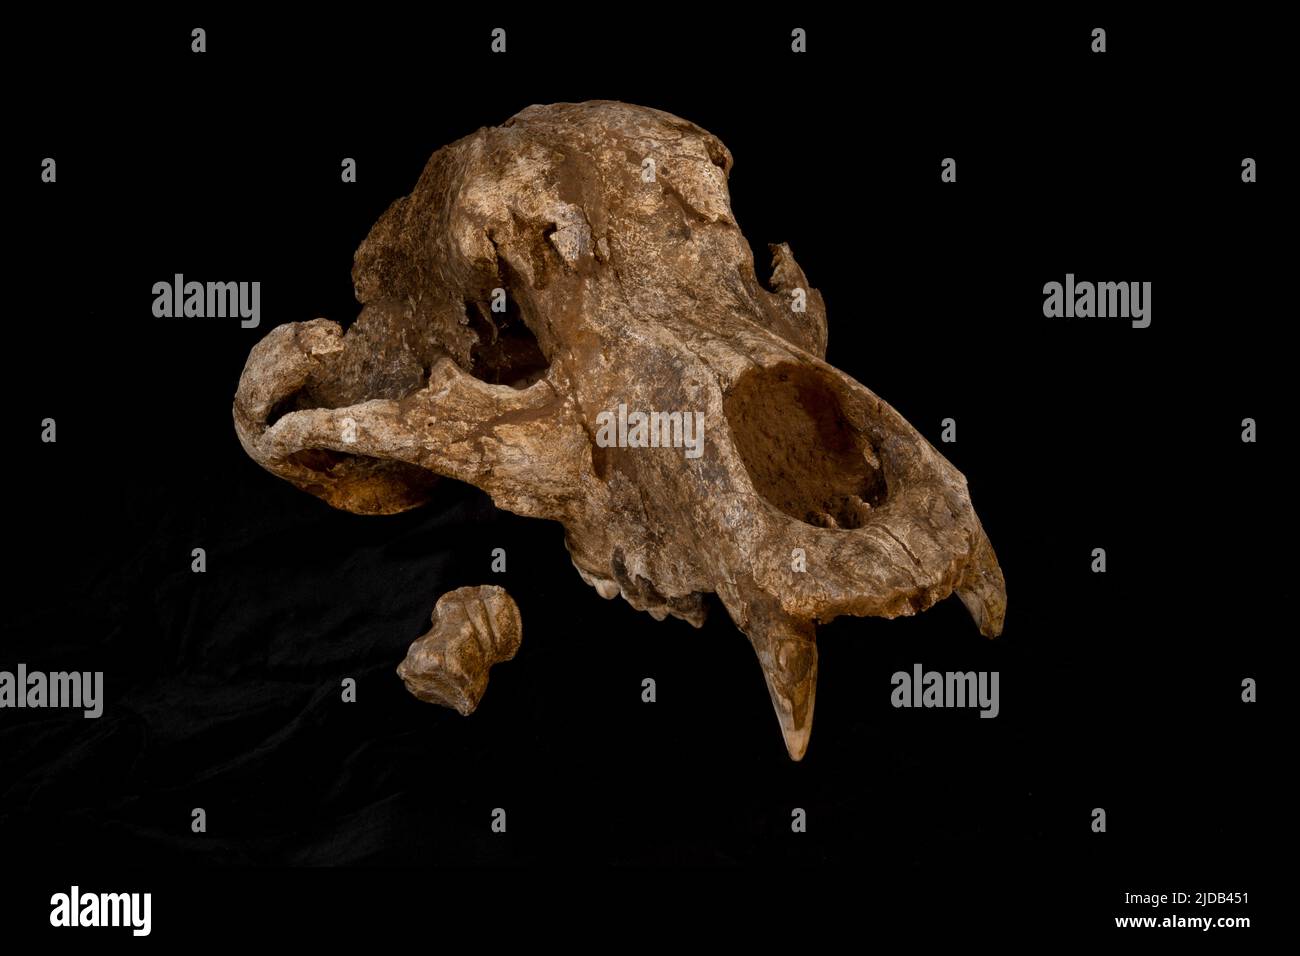 Questa è una fotografia del cranio dell'Orso accanto all'osso del Cervo gigante o "Megaloceros", con l'incisione di Neanderthal scolpita. Queste ossa... Foto Stock